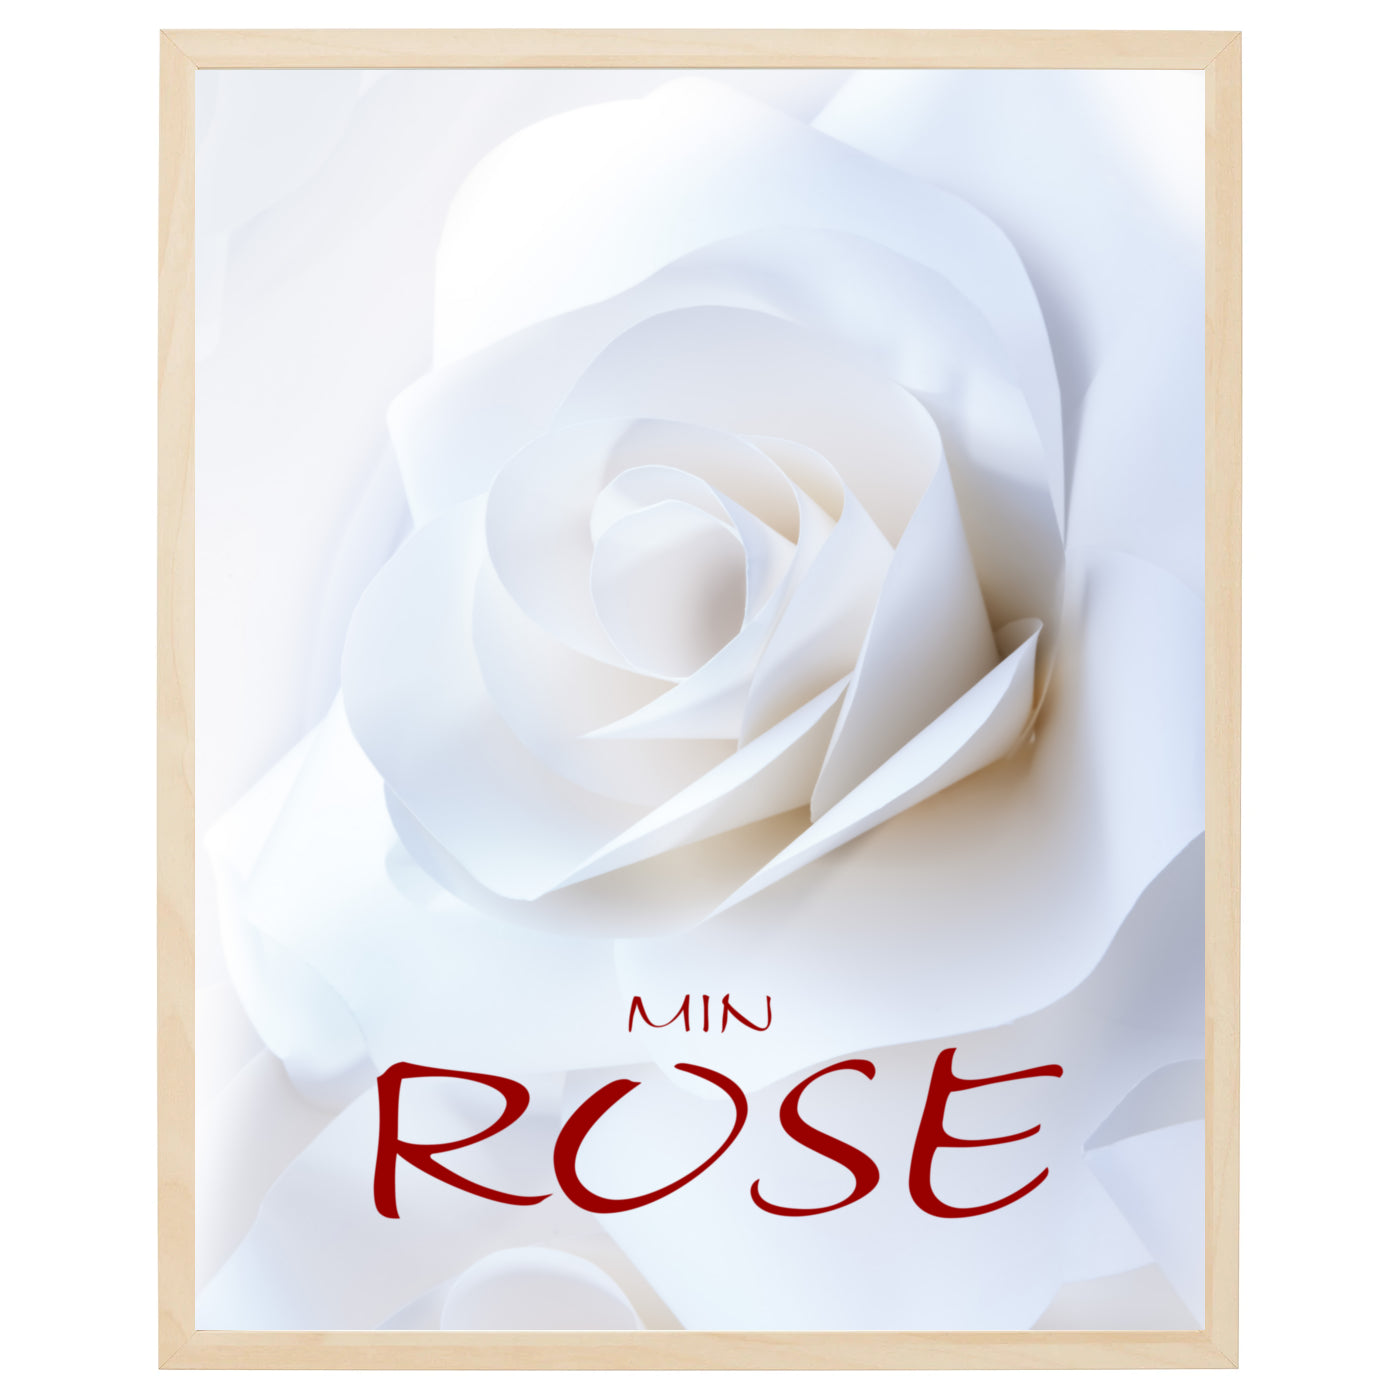 Dette er en smuk plakat med et nærbillede af en hvid rose i fuldt flor på en lys baggrund. Blomstens bløde kronblade og dens grønne støvdragere er i fokus i billedet og skaber en visuel kontrast til baggrunden. Den hvide rose symboliserer uskyld, renhed og ydmyghed. Plakaten er perfekt til at skabe en afslappende og rolig atmosfære i ethvert rum.